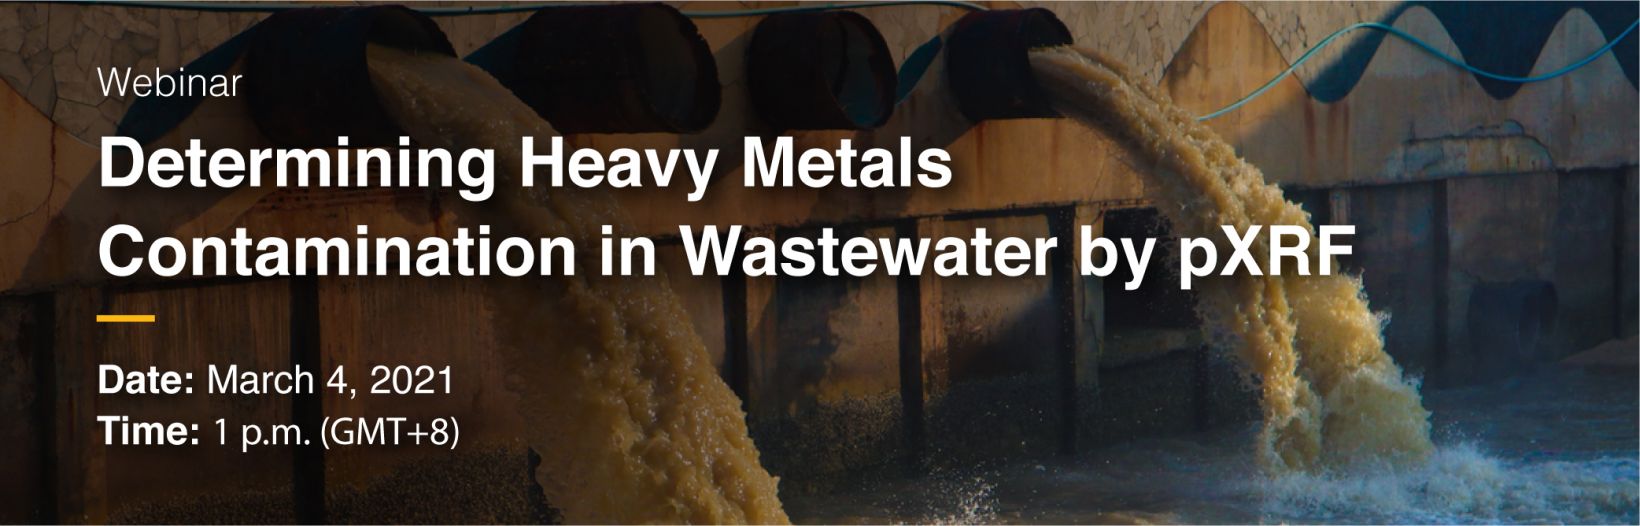 Determining Heavy Metals Contamination in Wastewater by pXRF | Online Webinar